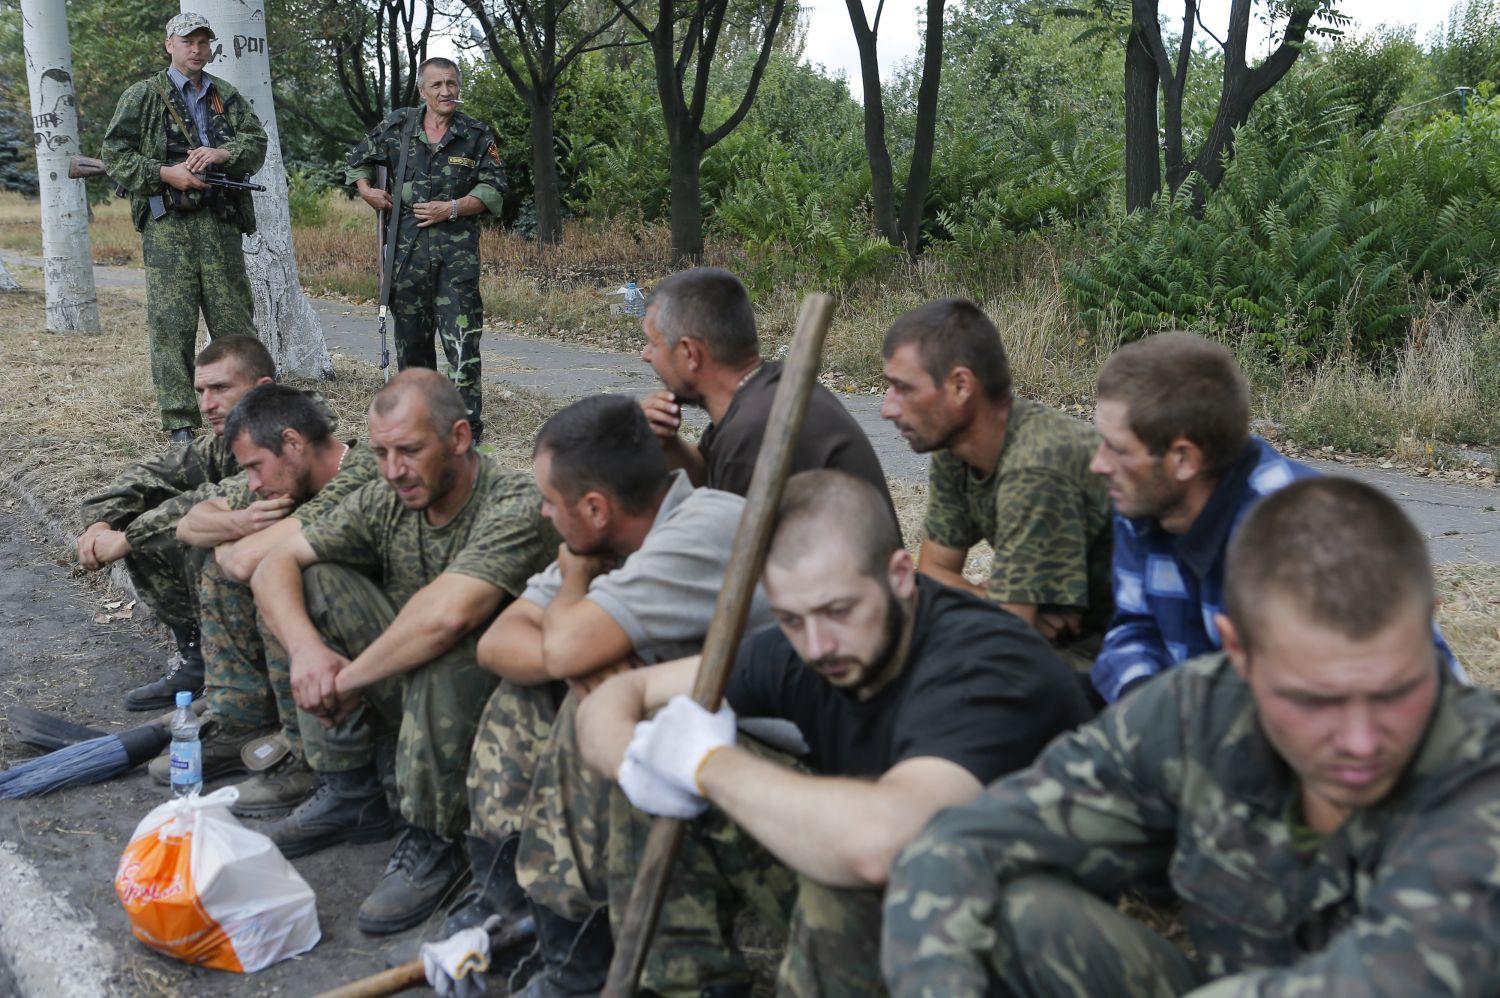 Foglyul ejtett ukrán katonák Sziznyében. Utcaseprőnek használják őket